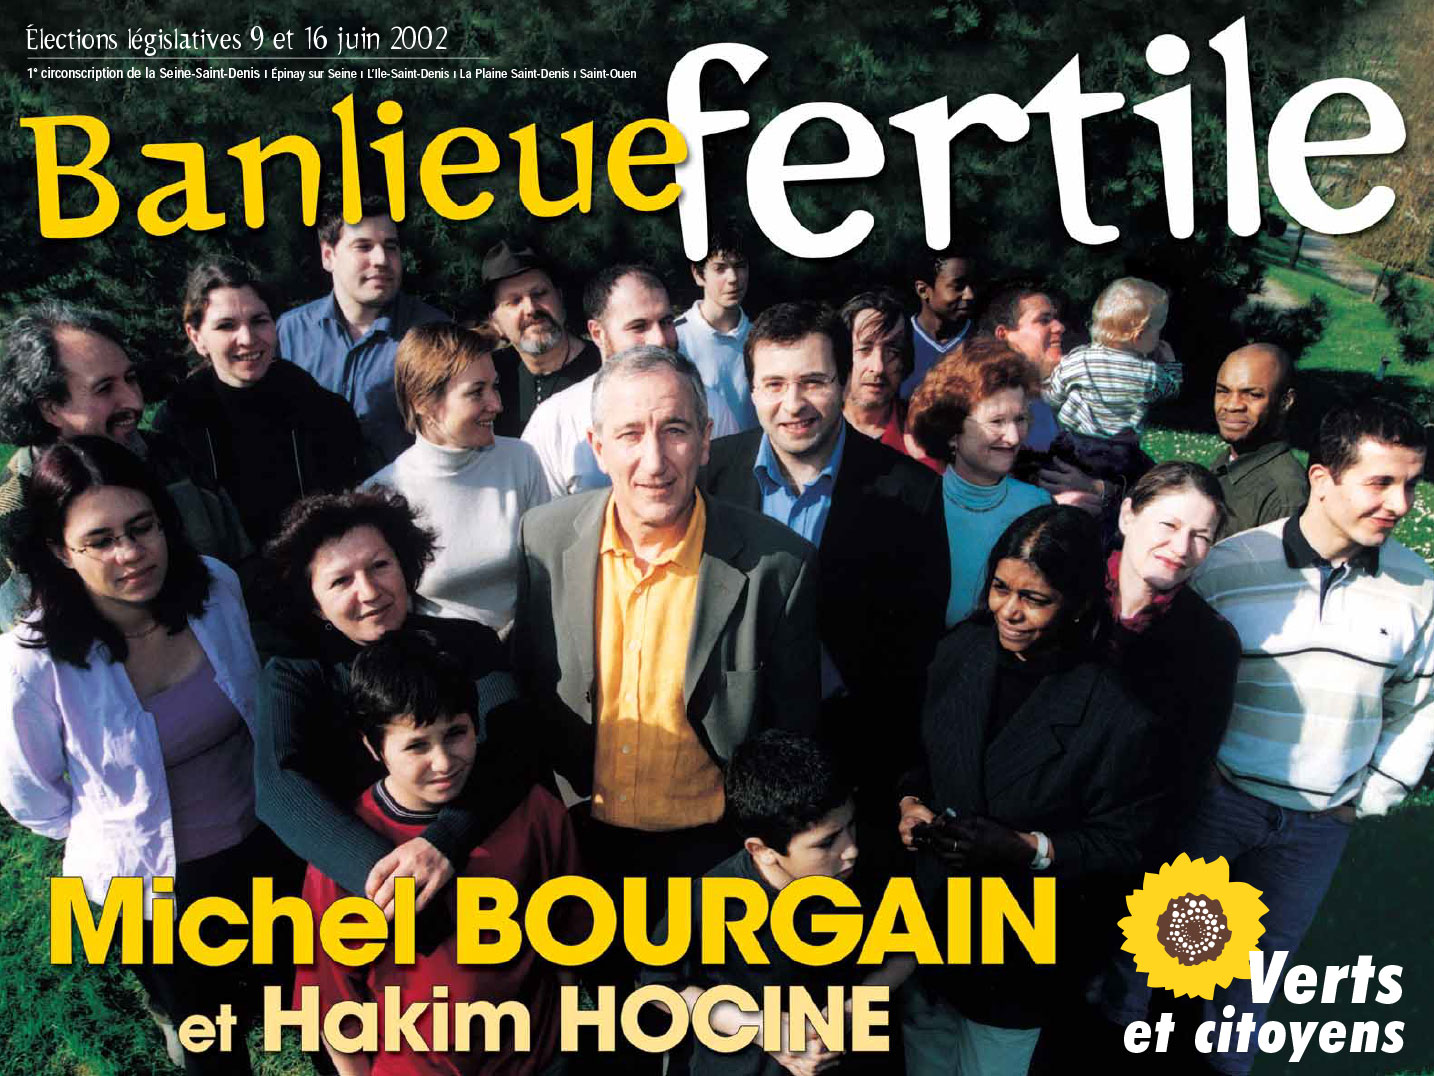 © Thierry Palau - campagne de Michel Bougain élections législatives 2002